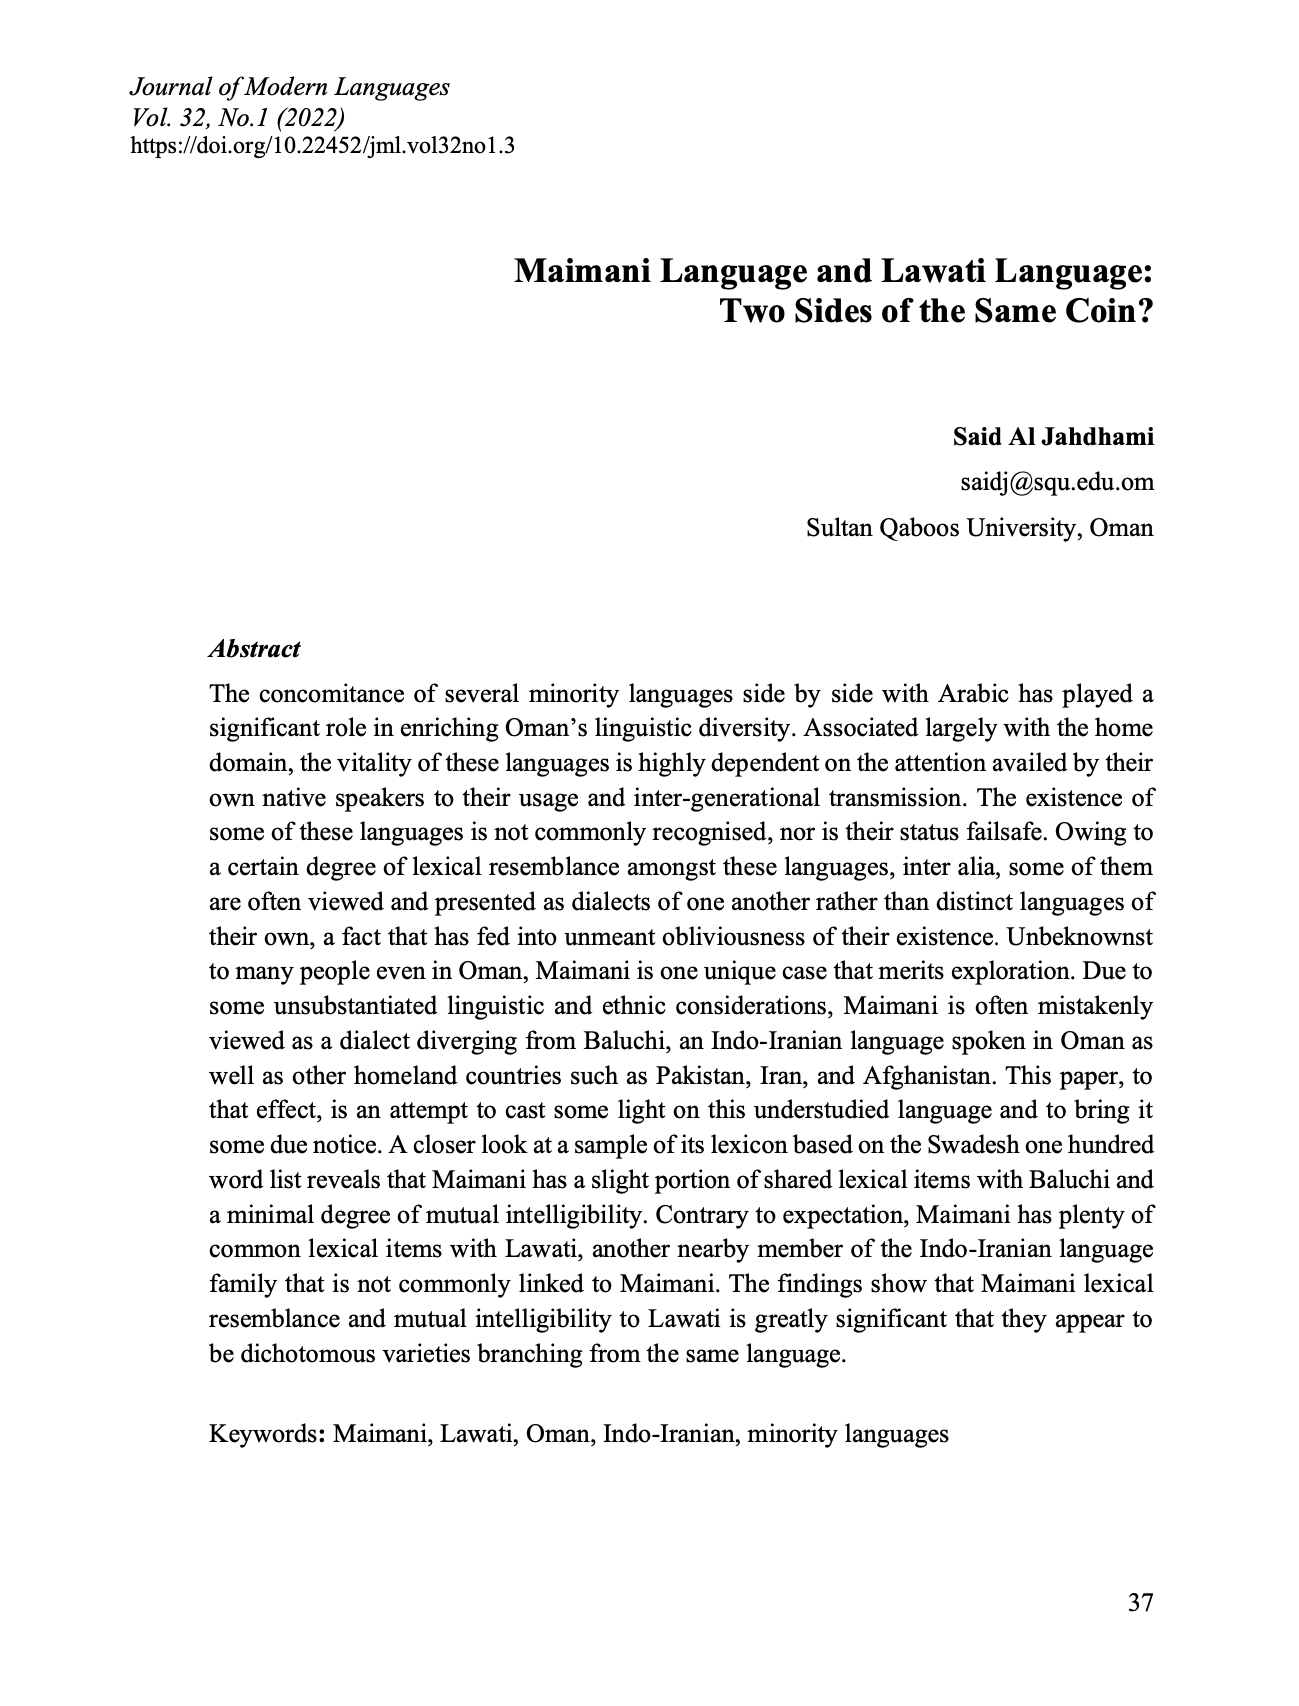 Article 3_Maimani Language and Lawati Language